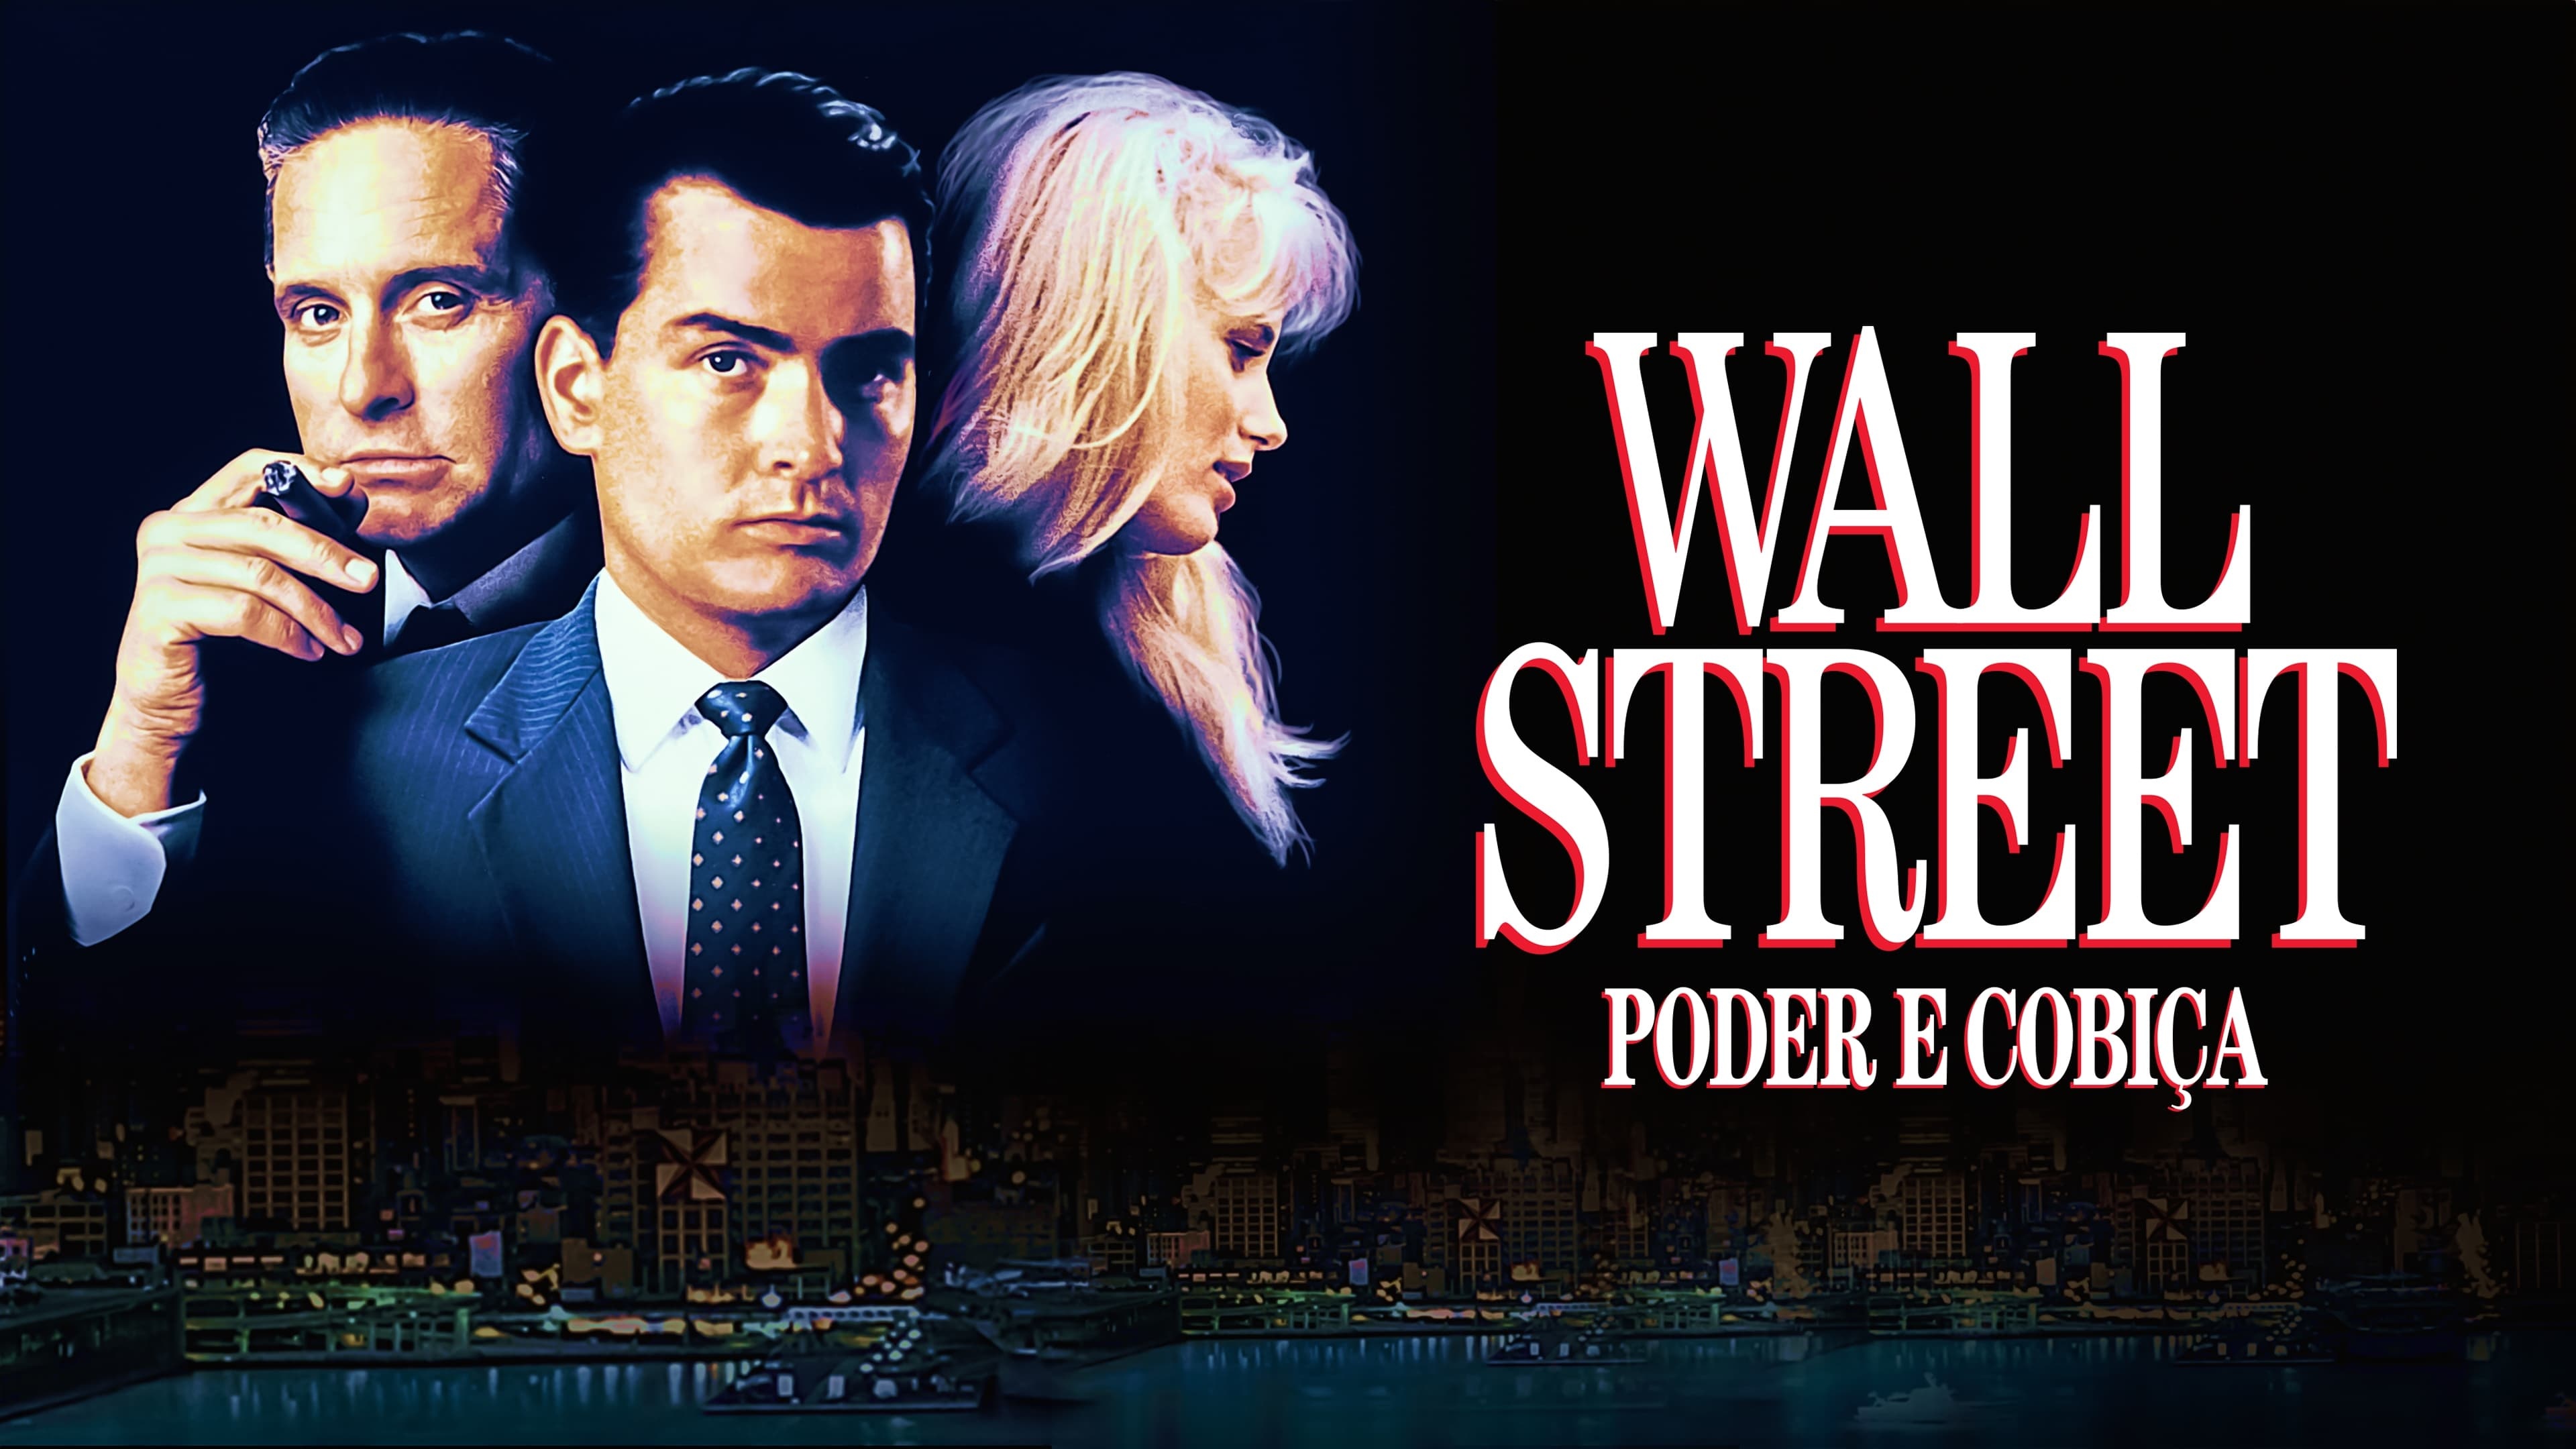 Wall Street movie, Movie database, Movie information, Film details, 3840x2160 4K Desktop